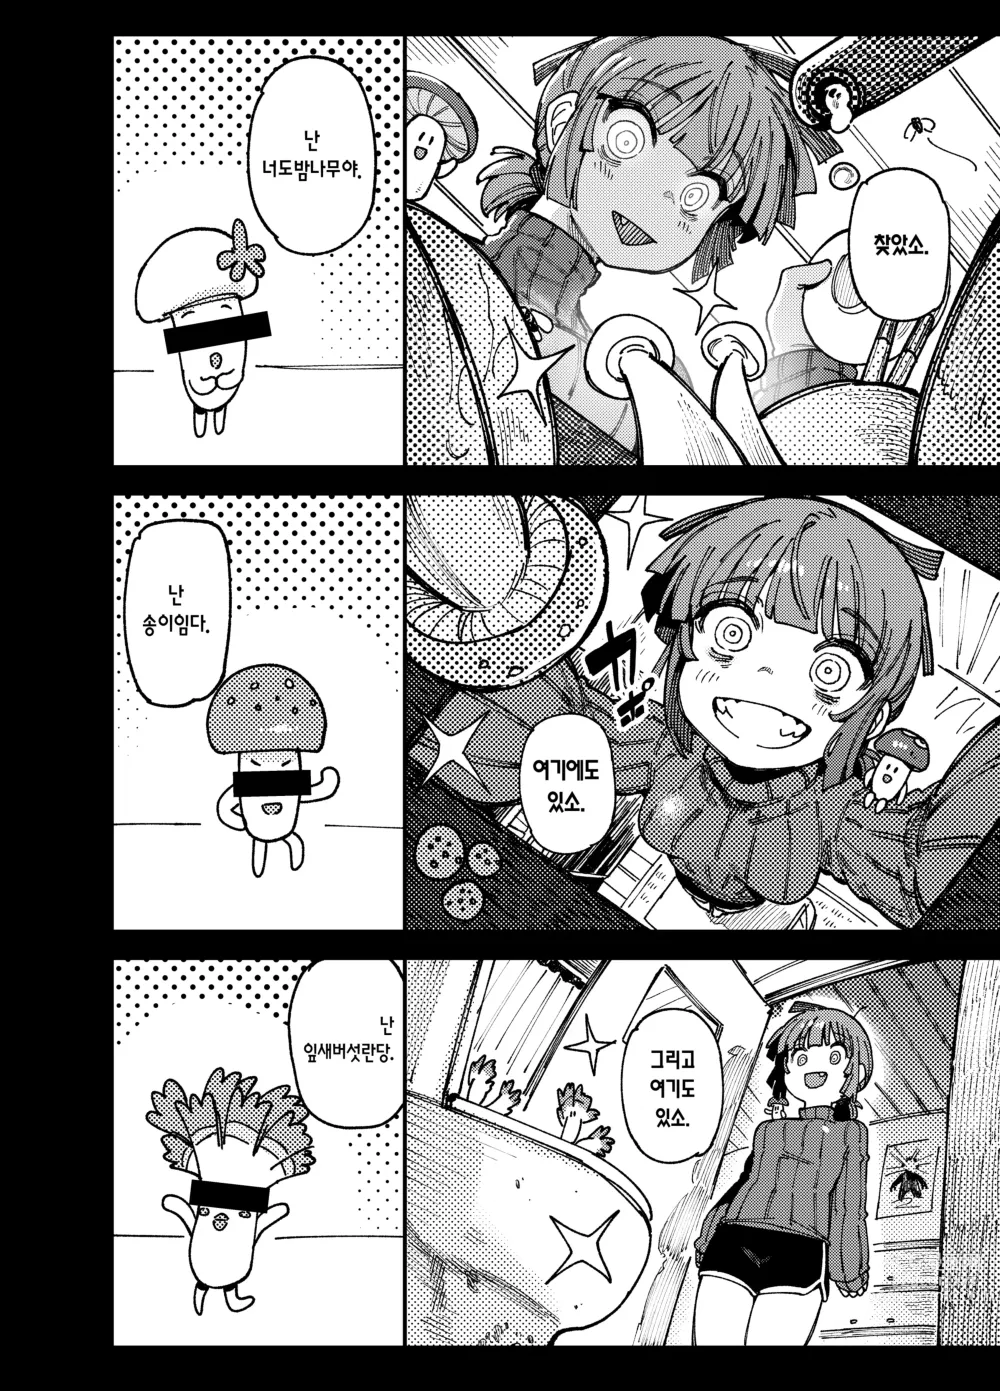 Page 8 of doujinshi 집이 너무 습해서 자란 환각을 유발하는 버섯을 잘못 먹고 발정이 나서 생긴 일들